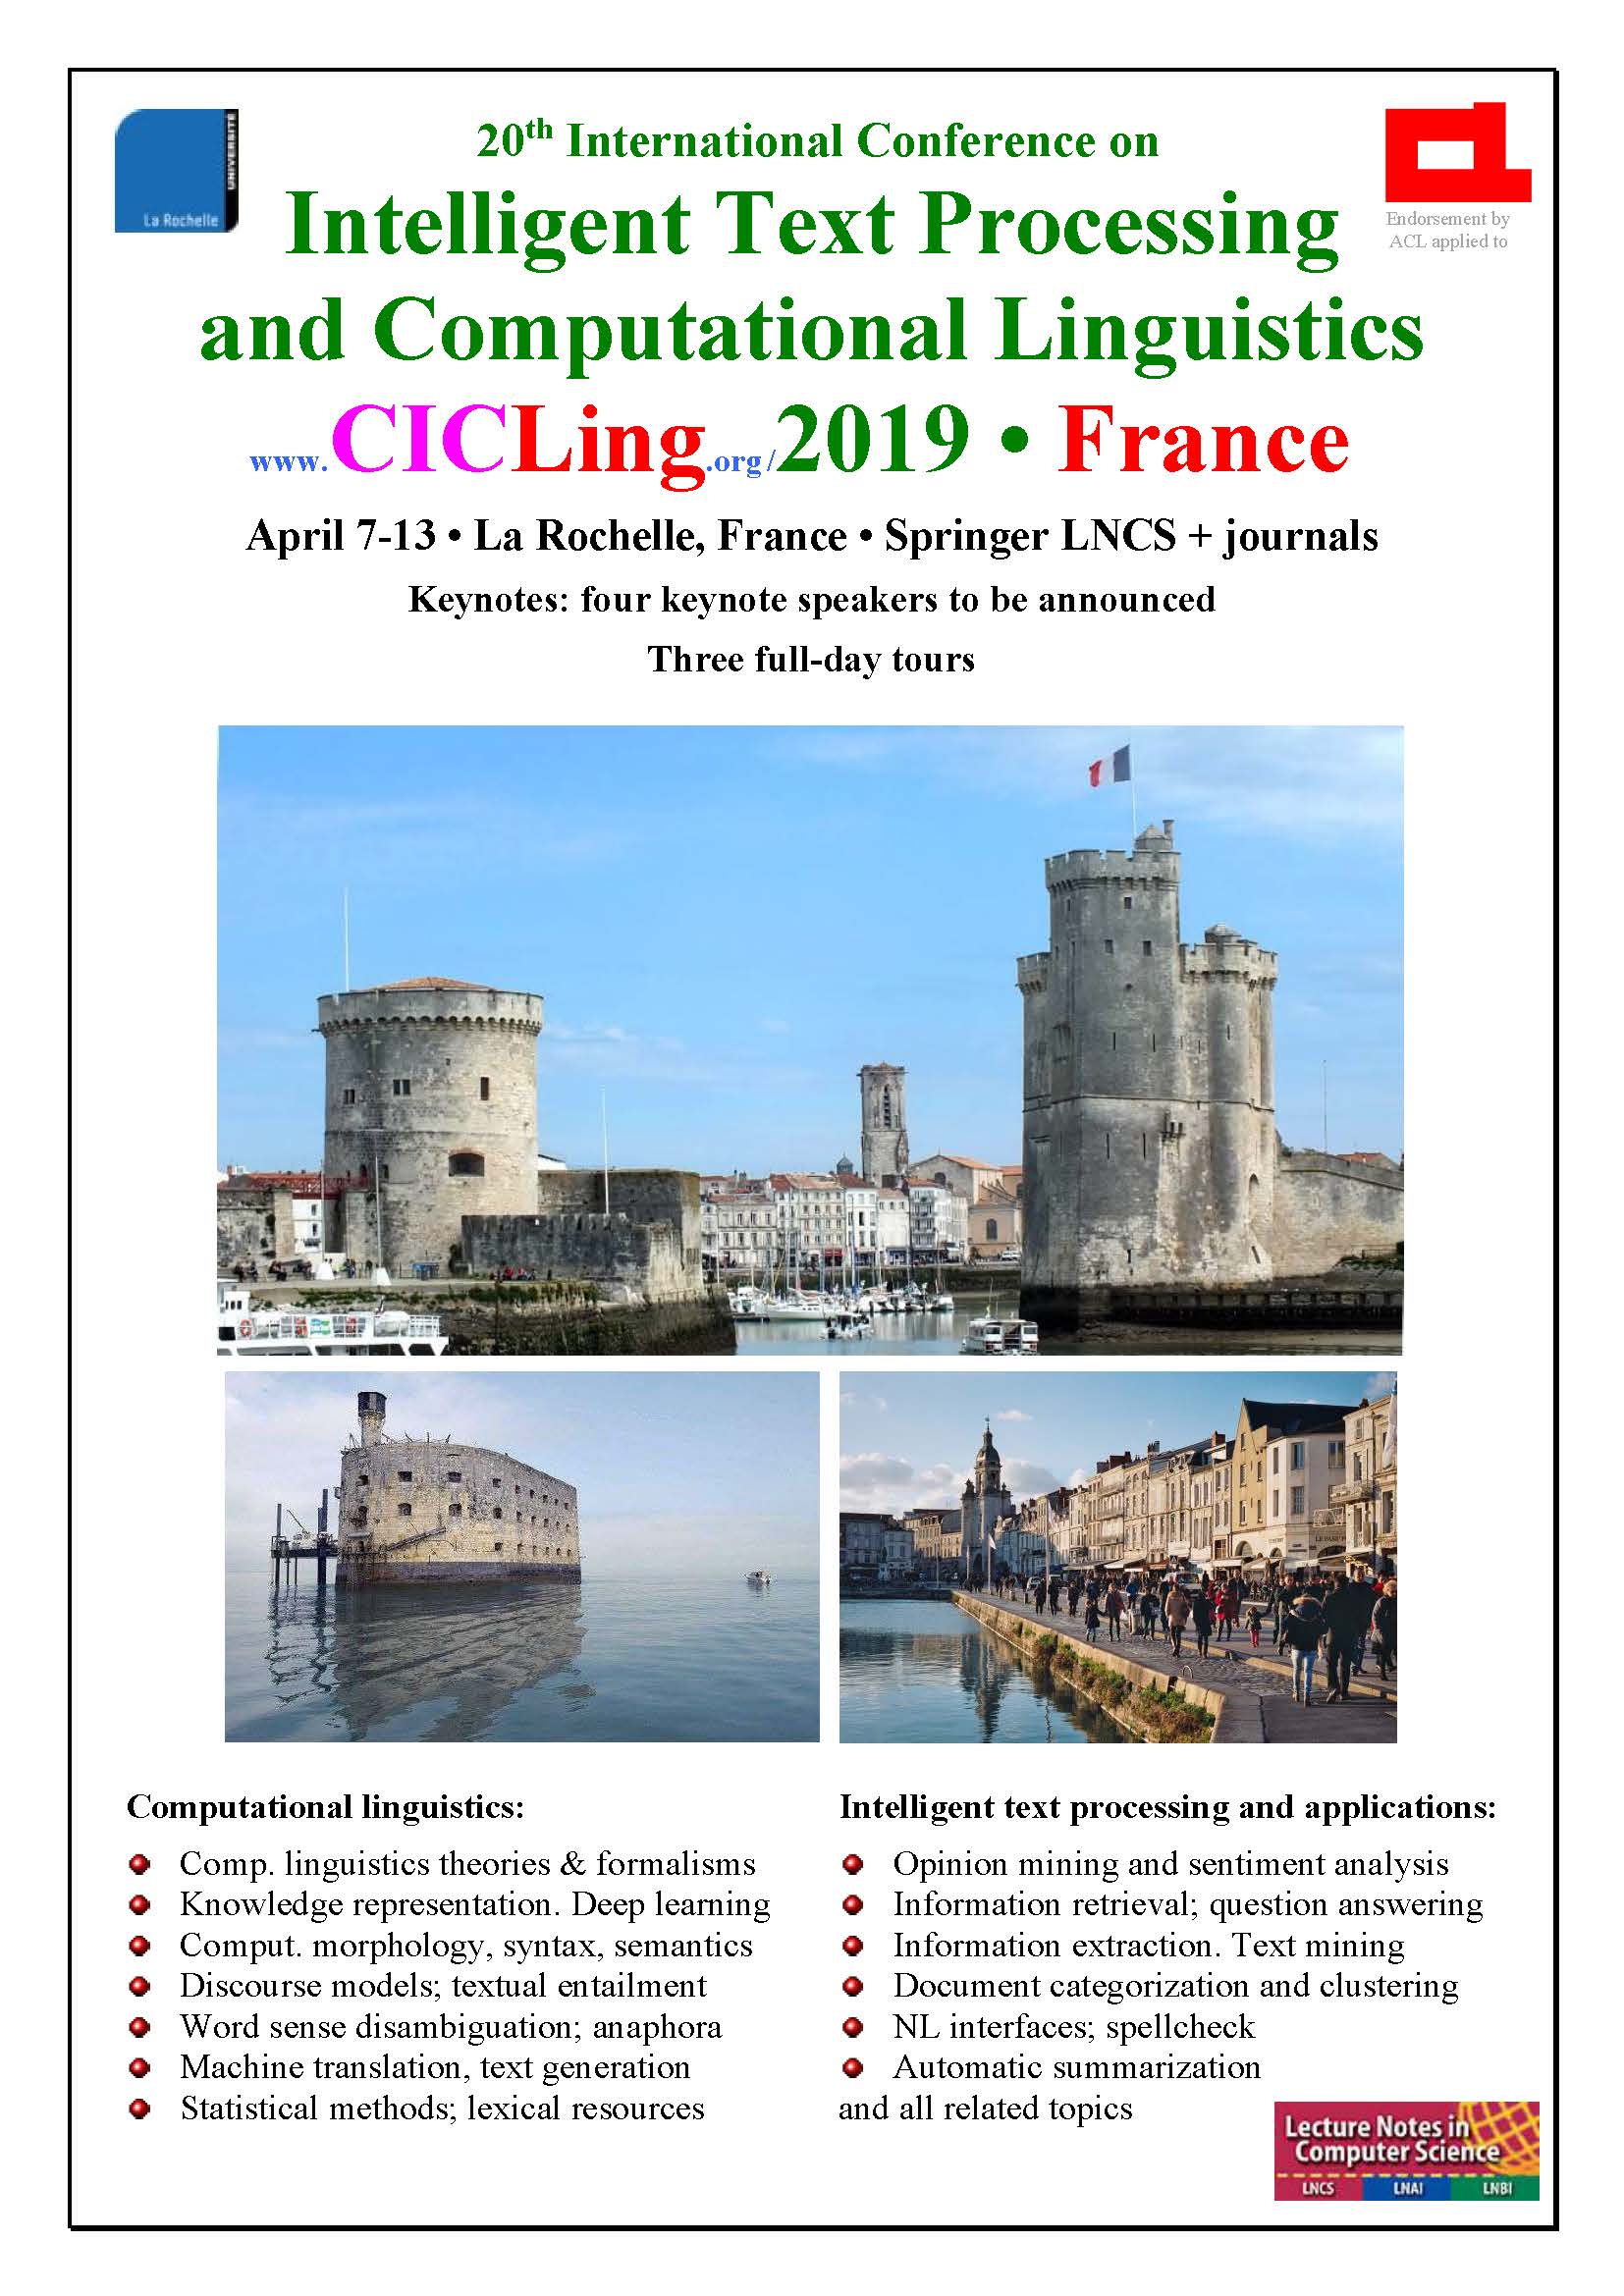 April 7 to 13, 2019 • La Rochelle, France